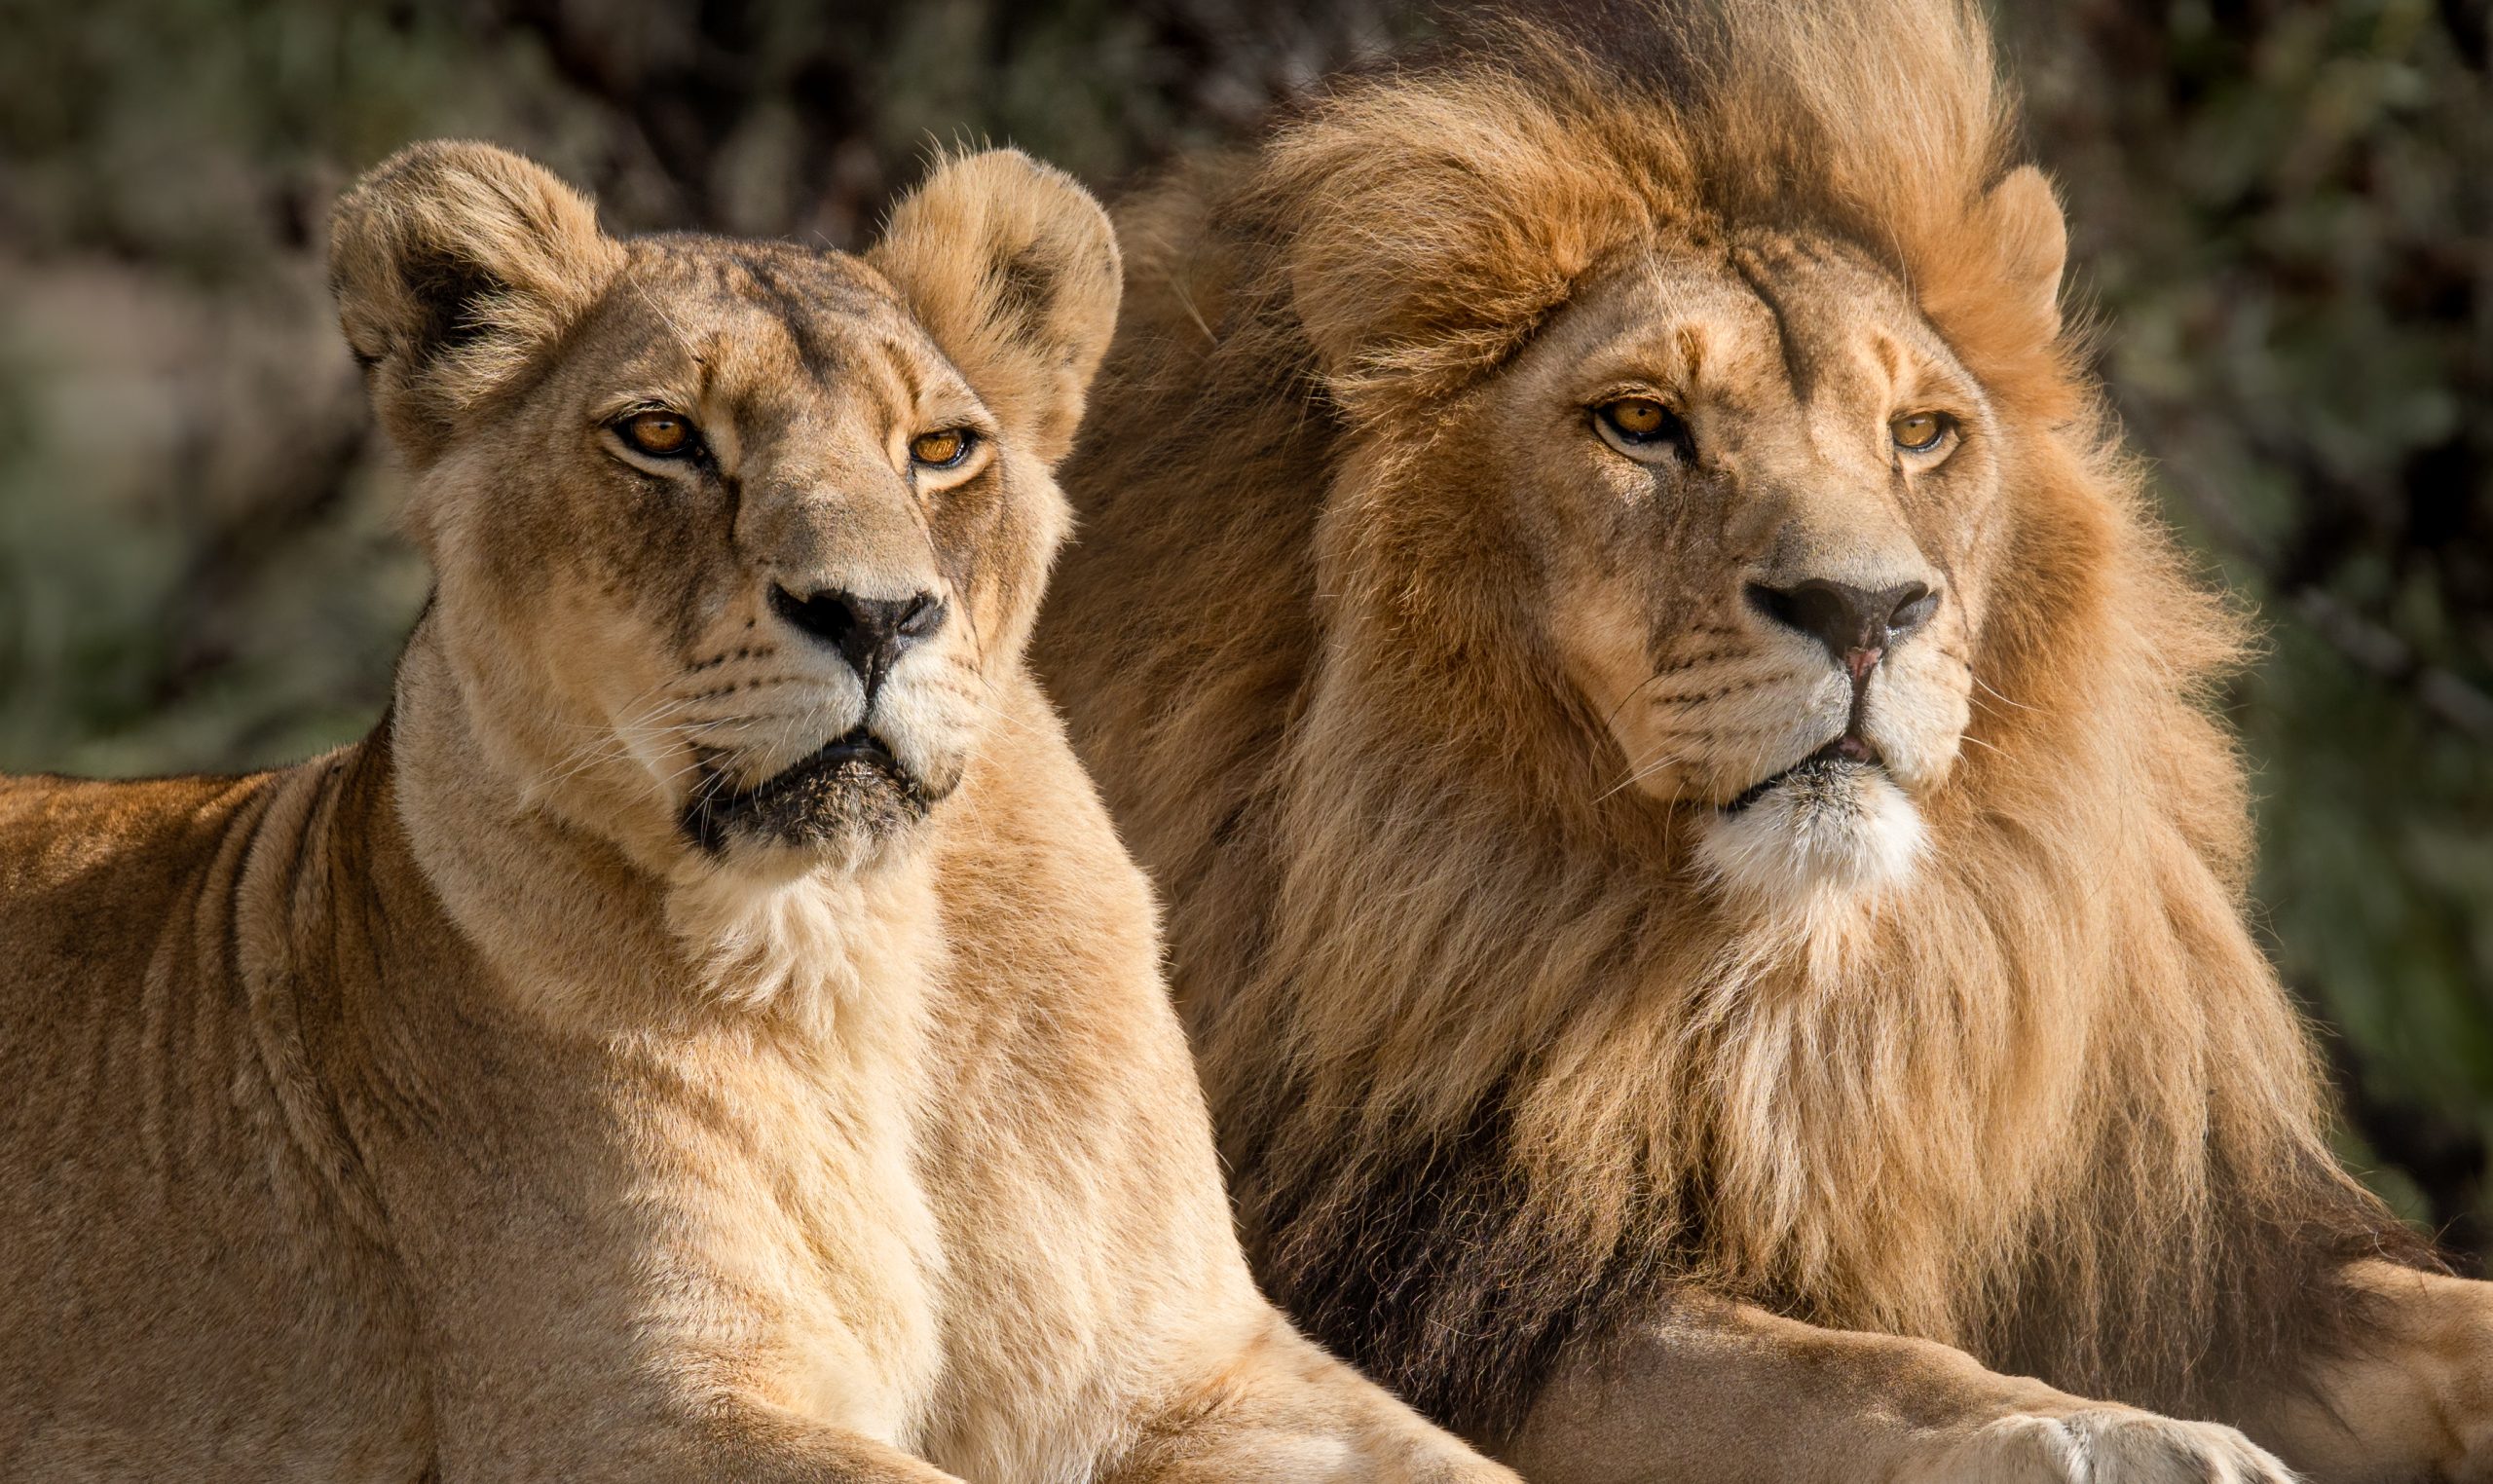 David Clarinval et l’AFSCA accordent un permis d’importation pour deux lions ukrainiens